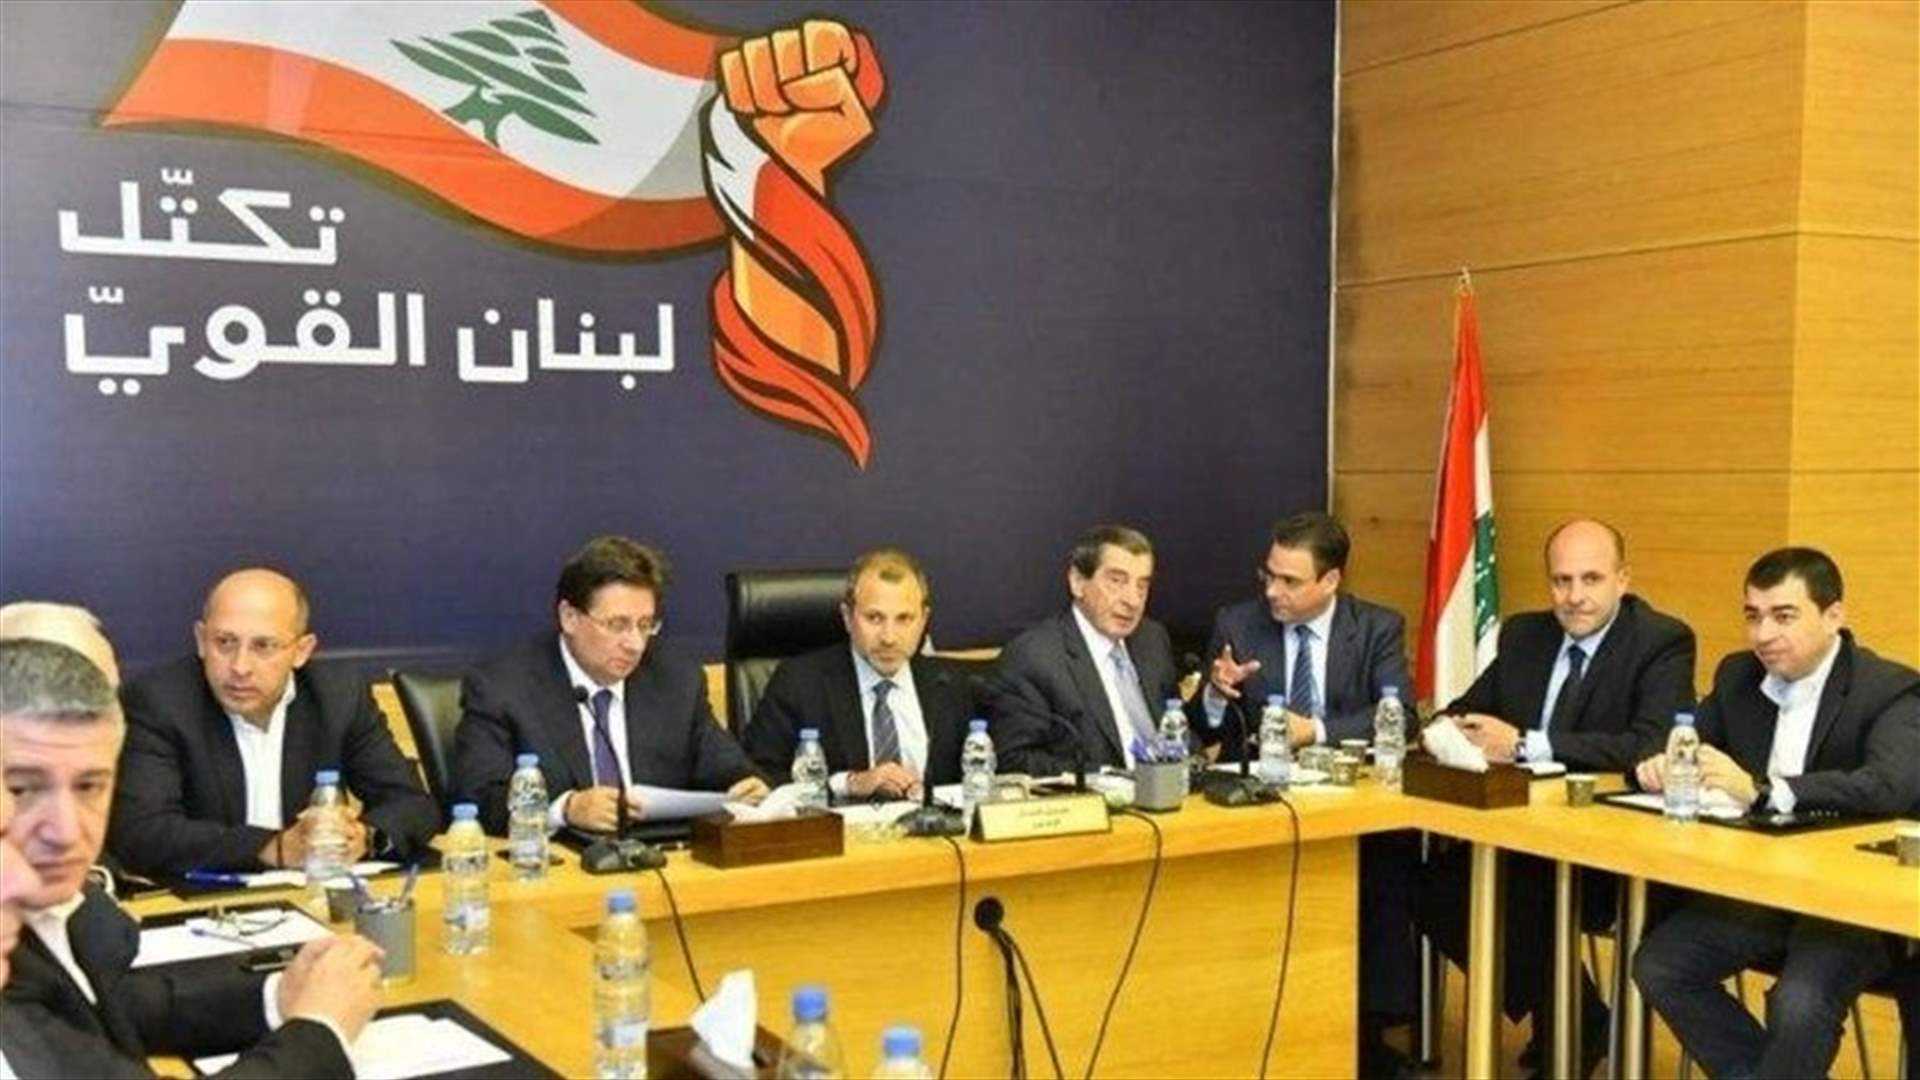 &quot;لبنان القوي&quot; رأى في بيان الحريري تجاوزاً للآليات الدستورية الخاصة بتشكيل الحكومة